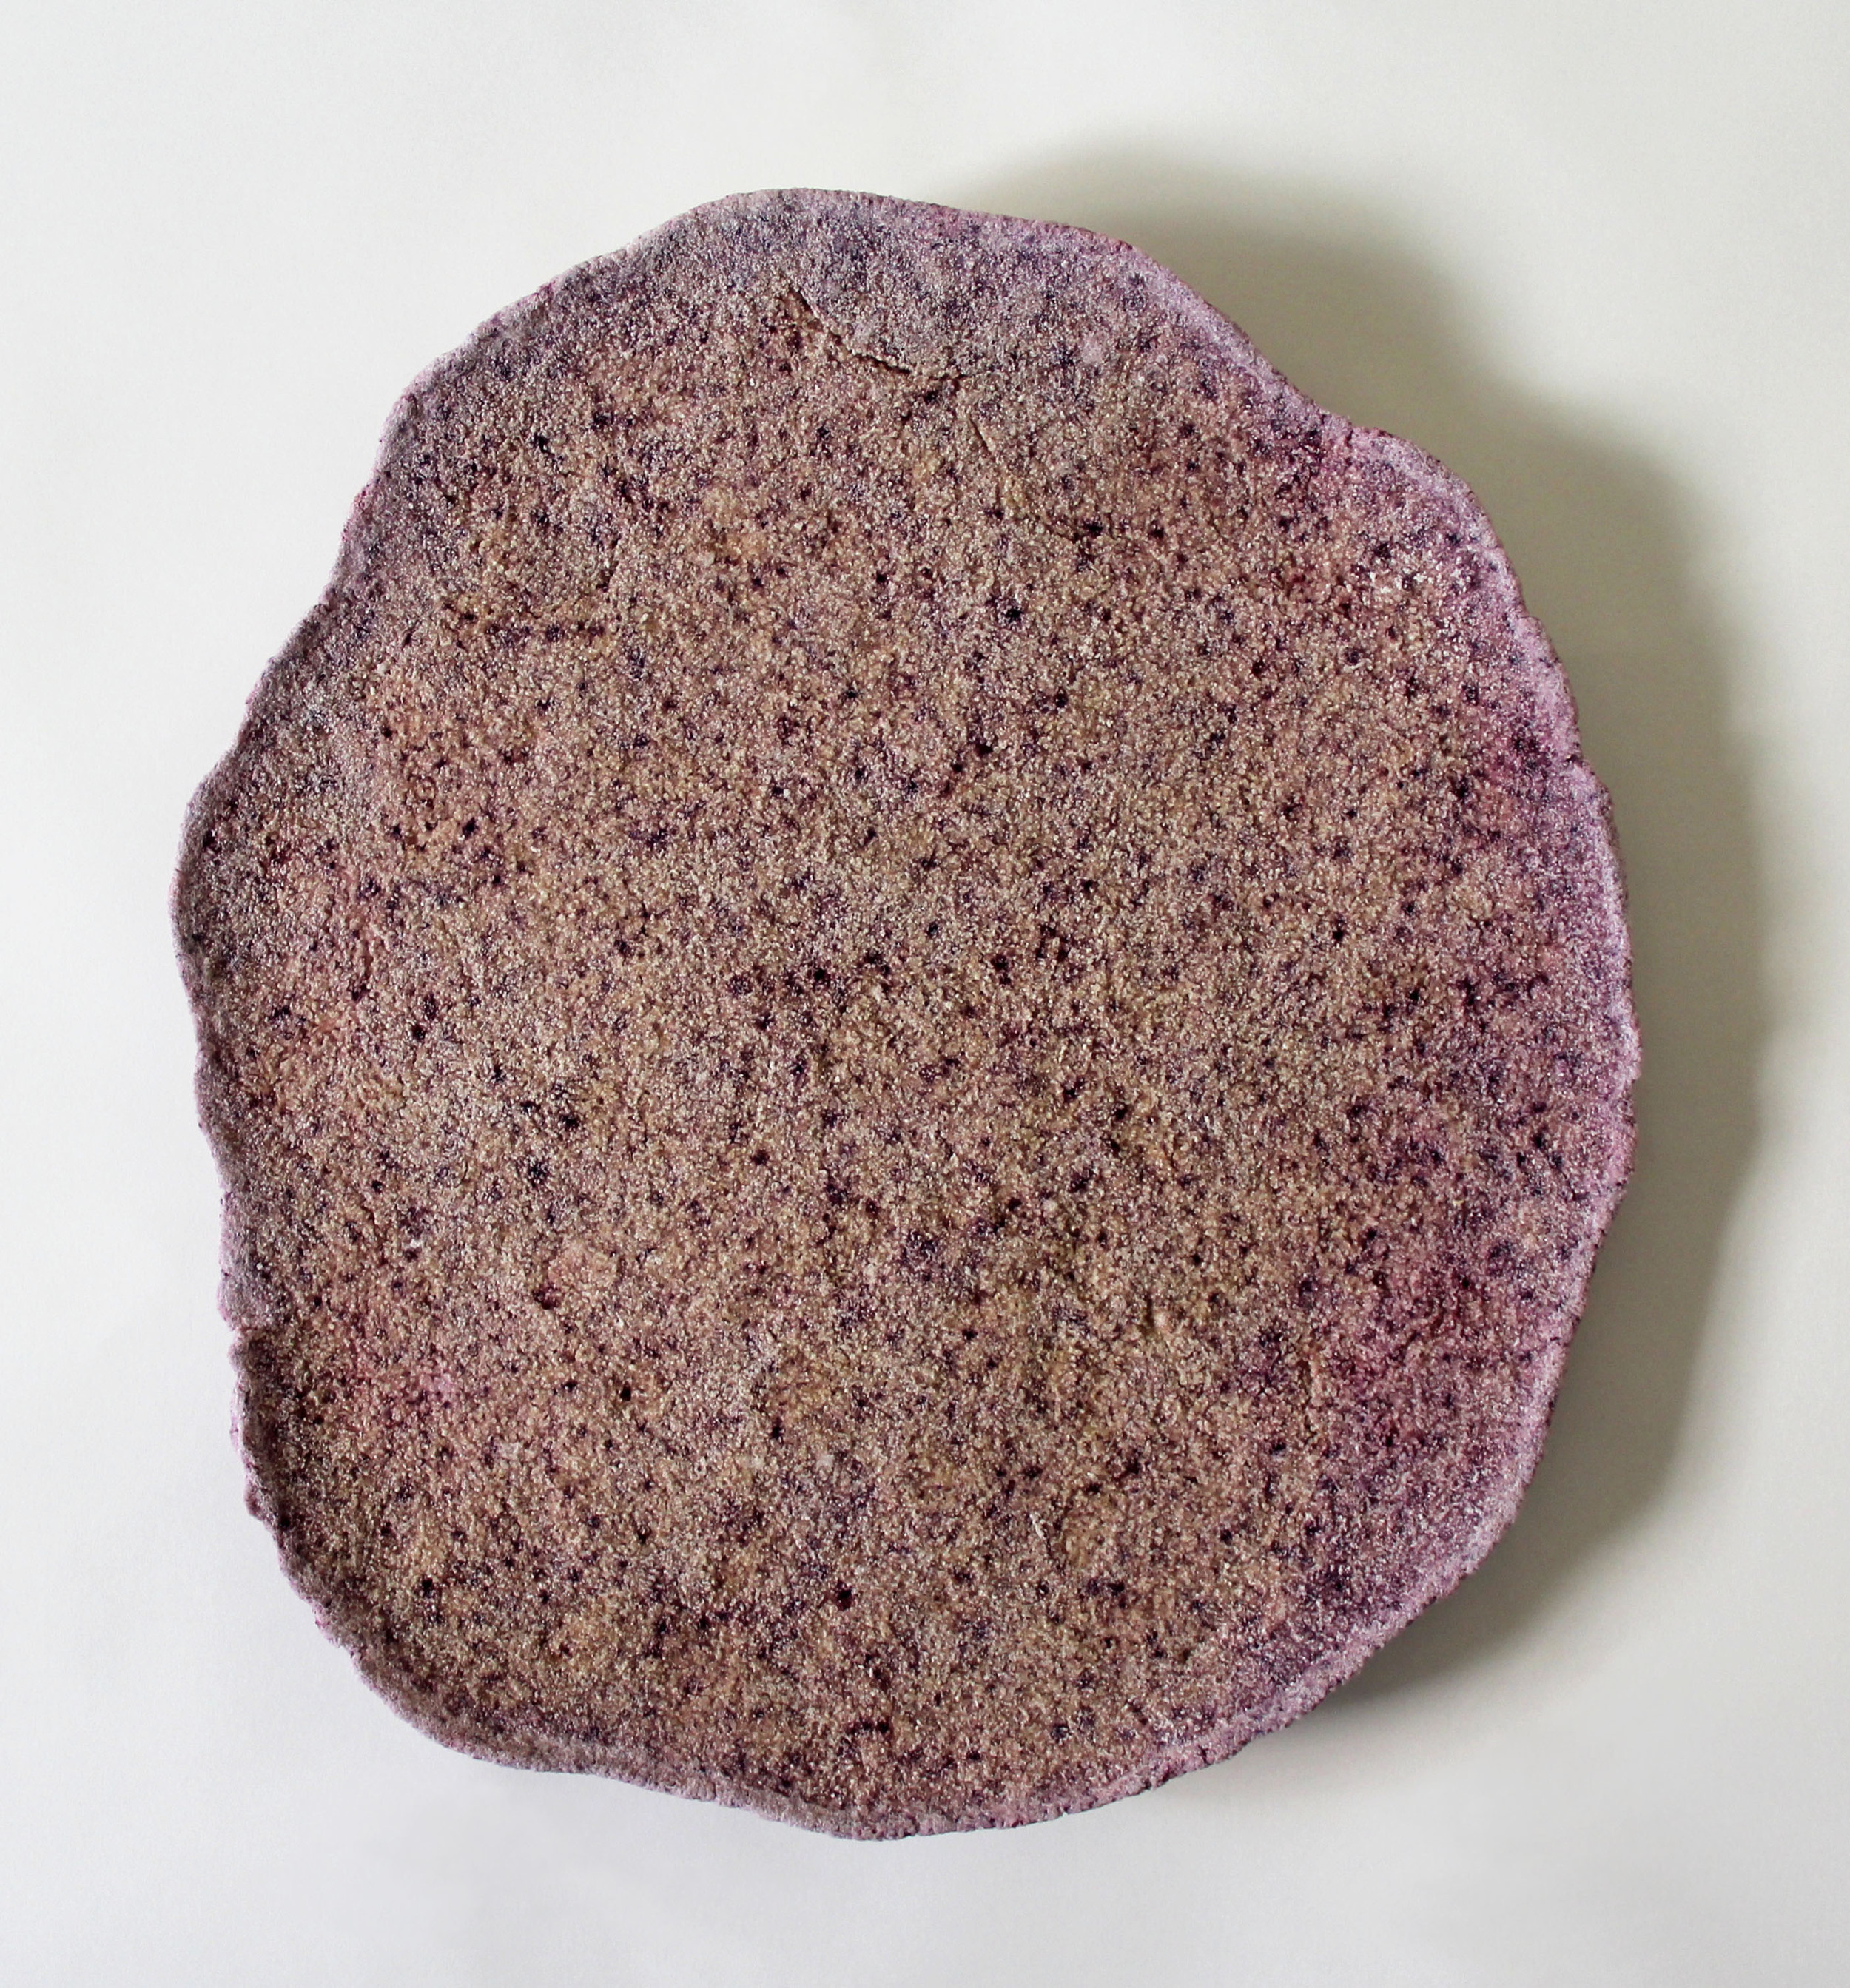  salt glob2 &nbsp; 2014 &nbsp; salt, flour, hibiscus &nbsp; 13 inches diameter 